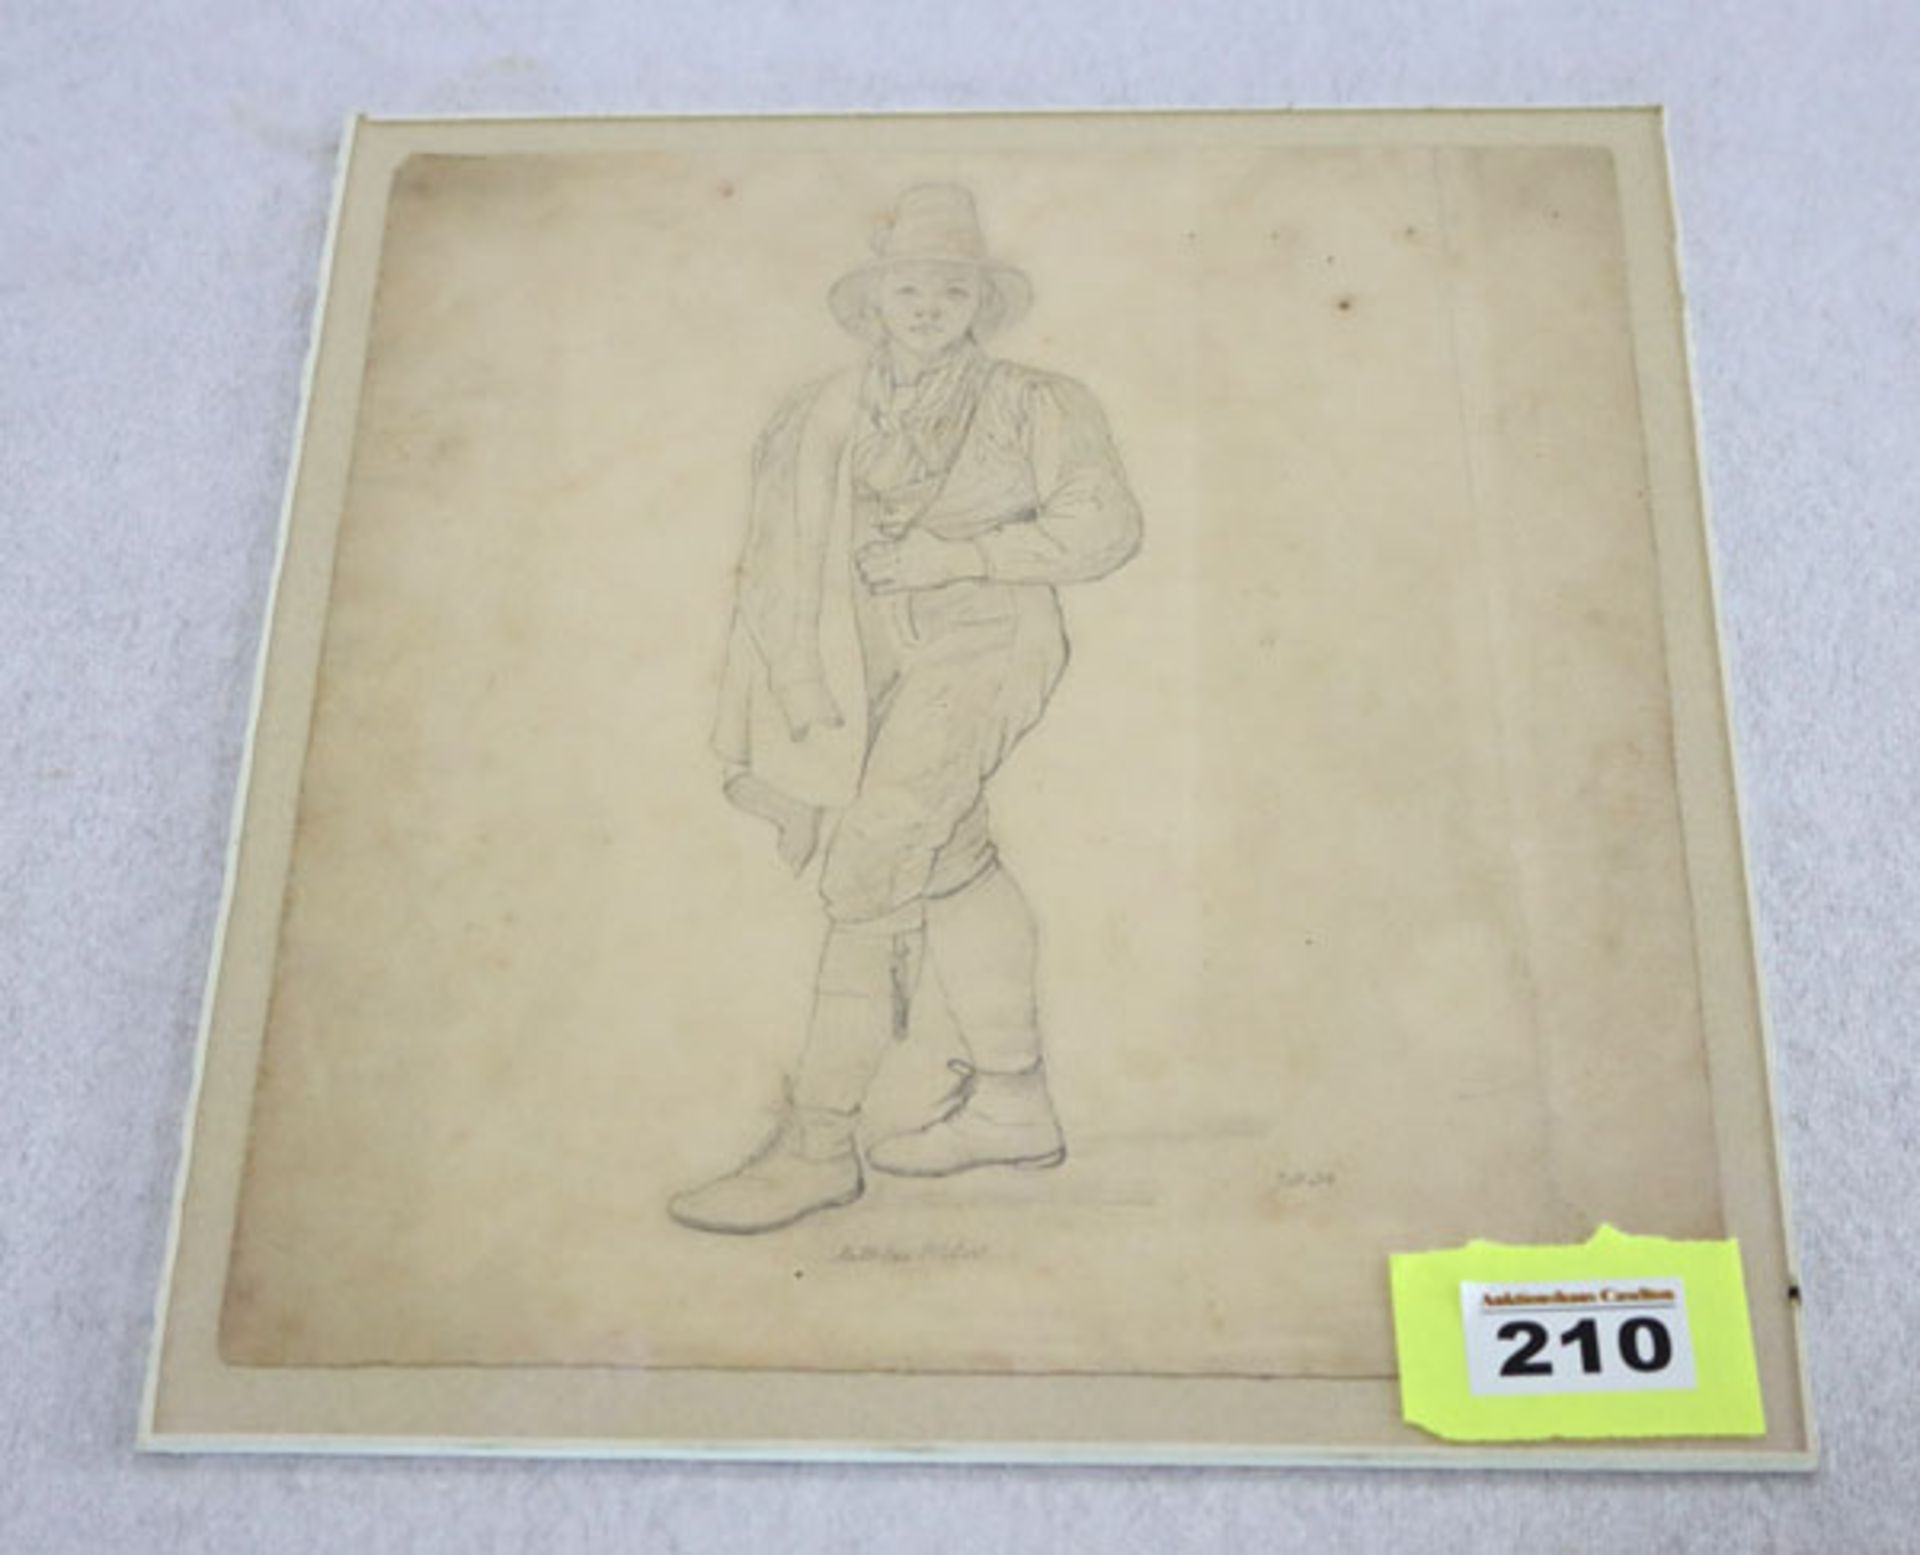 Bleistiftzeichnung 'Mann in Tracht', bez. Mathias Waler Juli 34', Blatt fleckig, unter Glas, 32 cm x